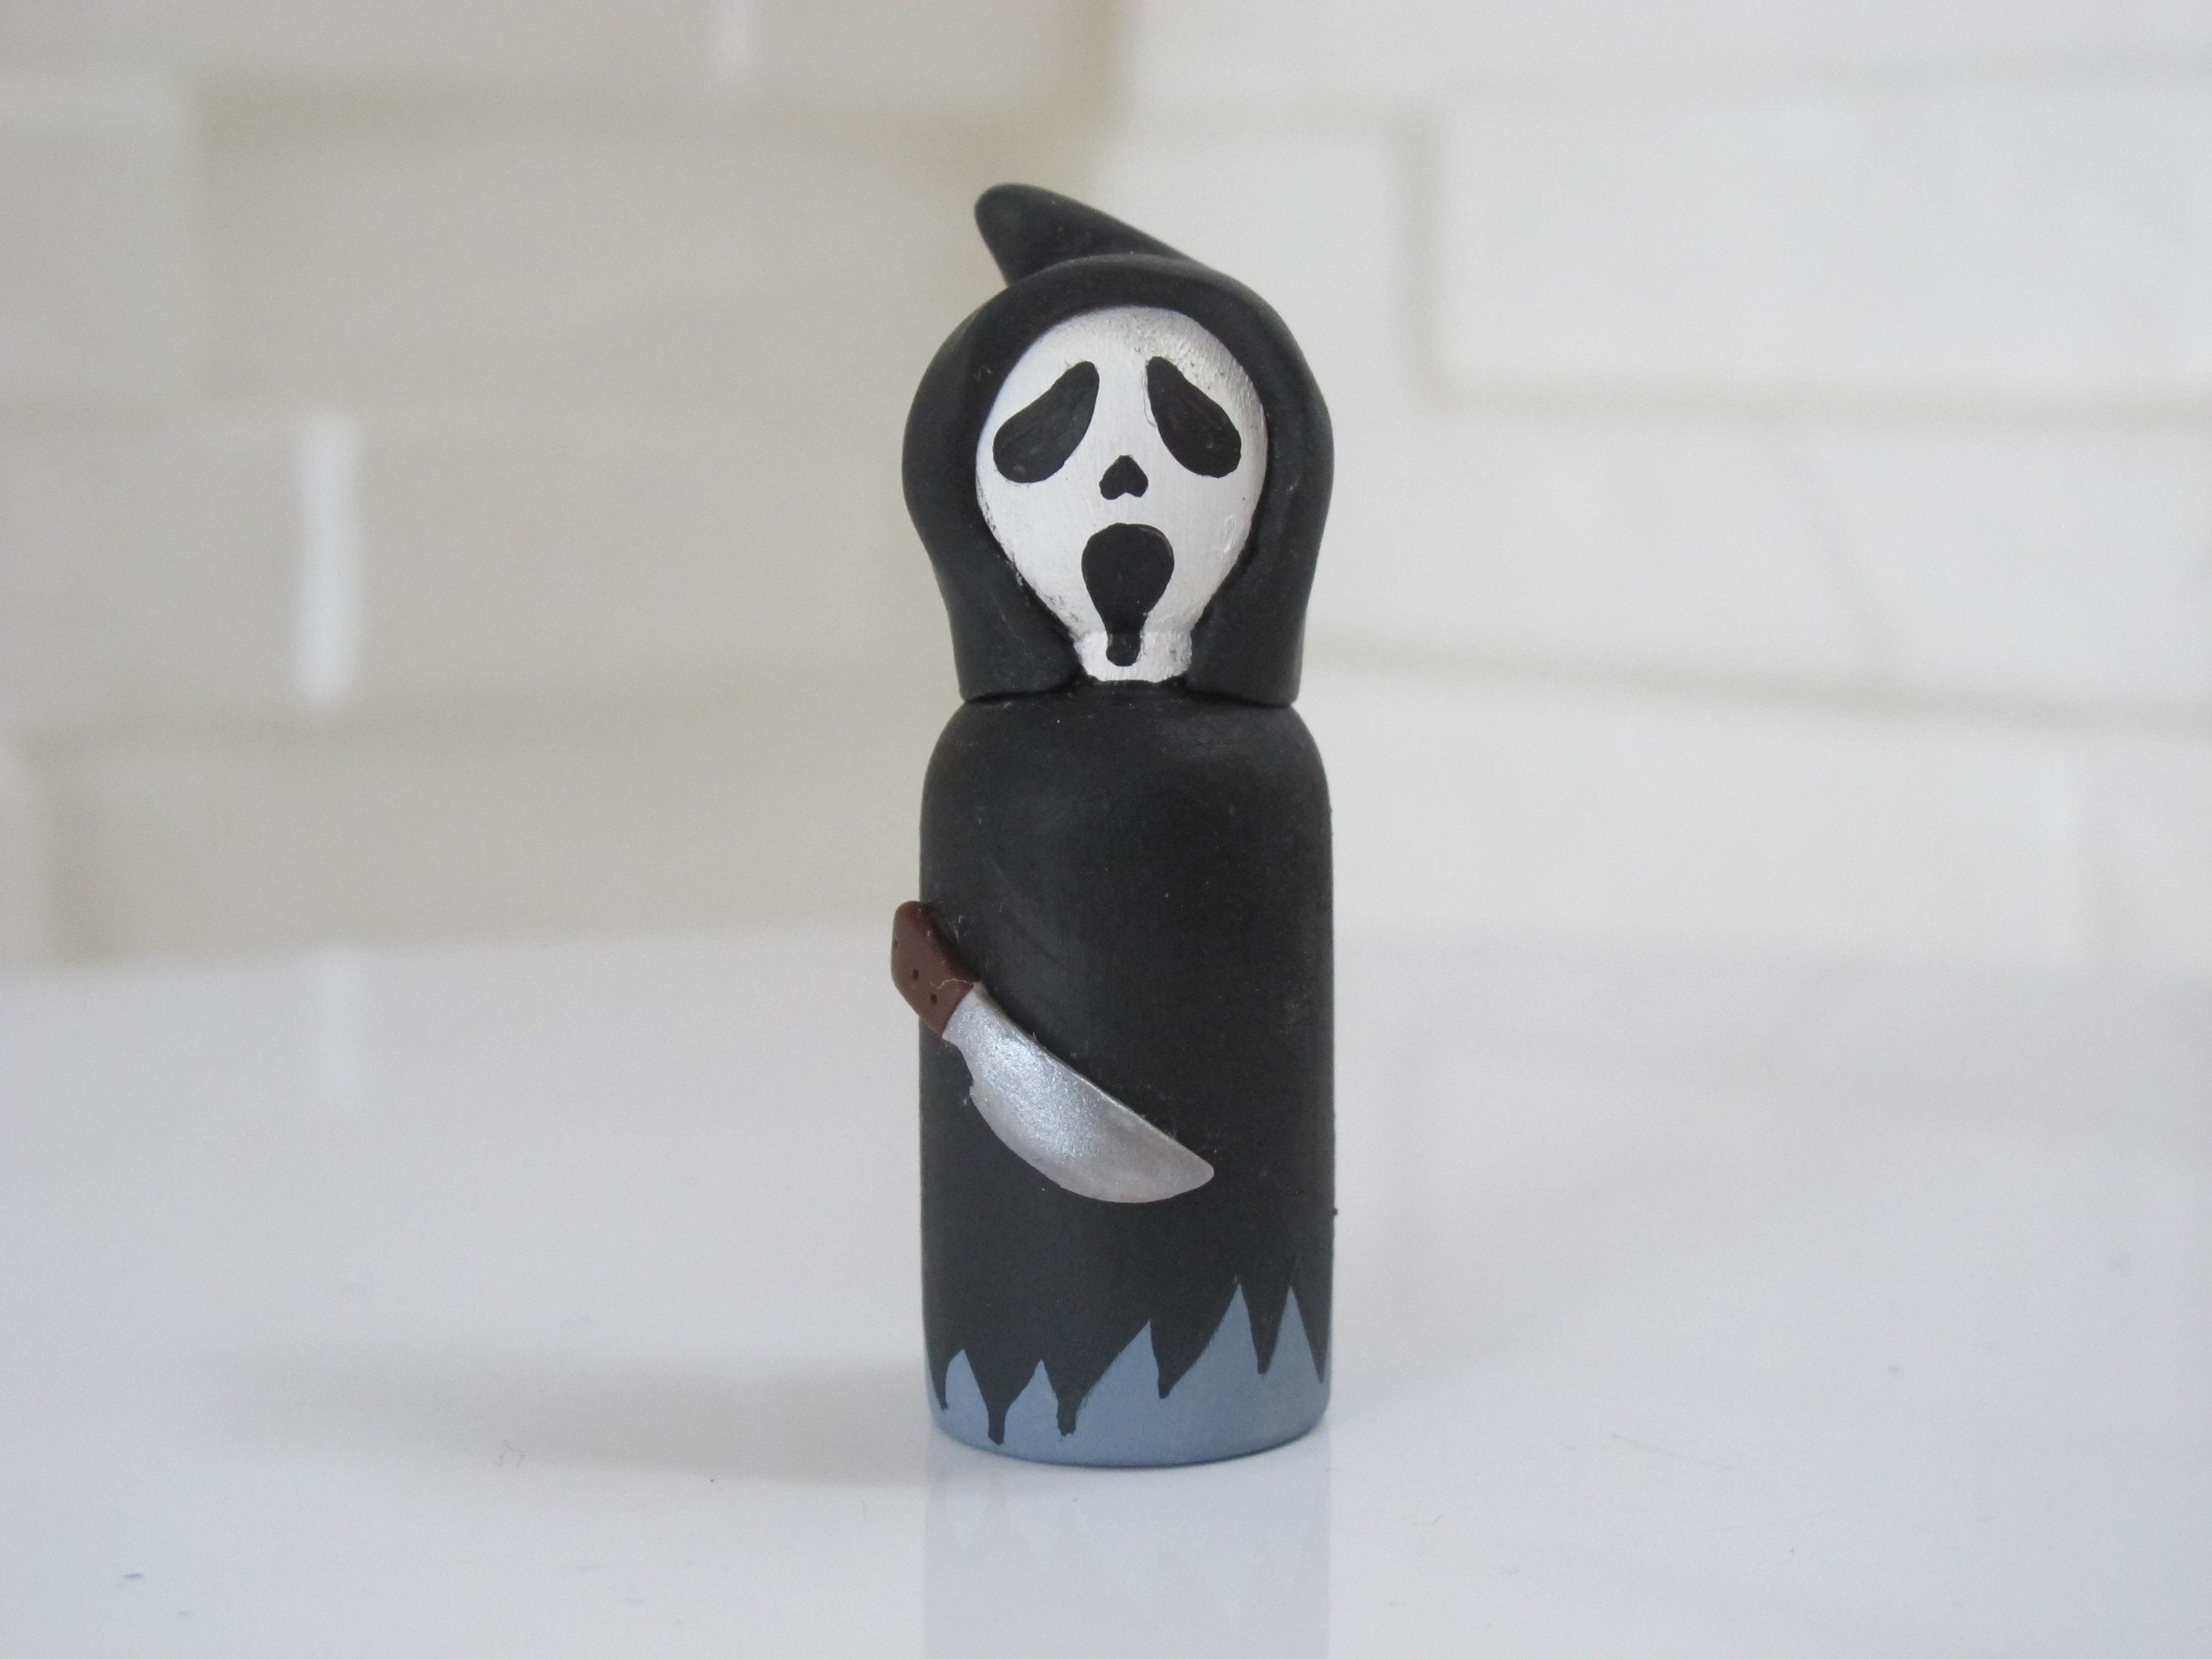 Scream Ghost Face Plush Toy Cute Grim Reaper Ghost Face Plush Toy Terrors  Reaper Ghost Doll Gifts for Kids Adults (Cute Ghost) 